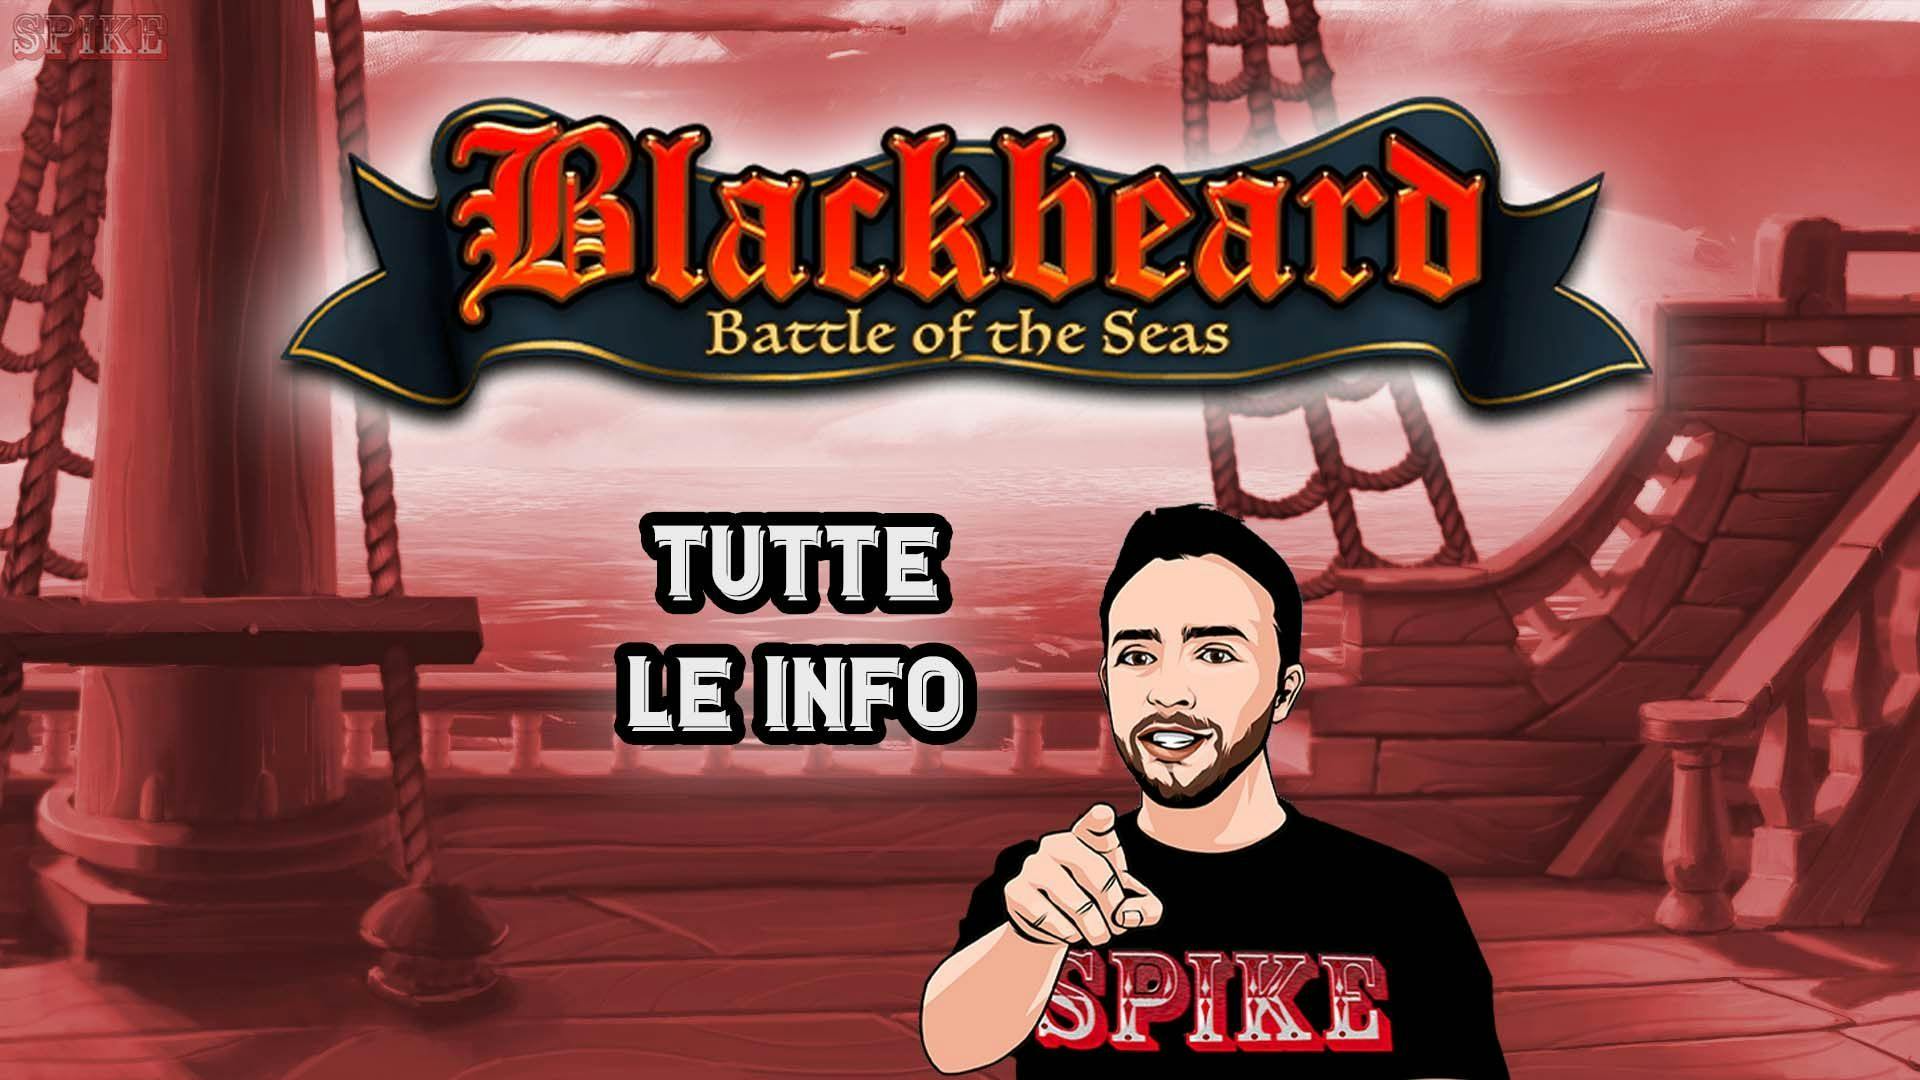 Blackbeard Battle Of The Seas Nuova Slot